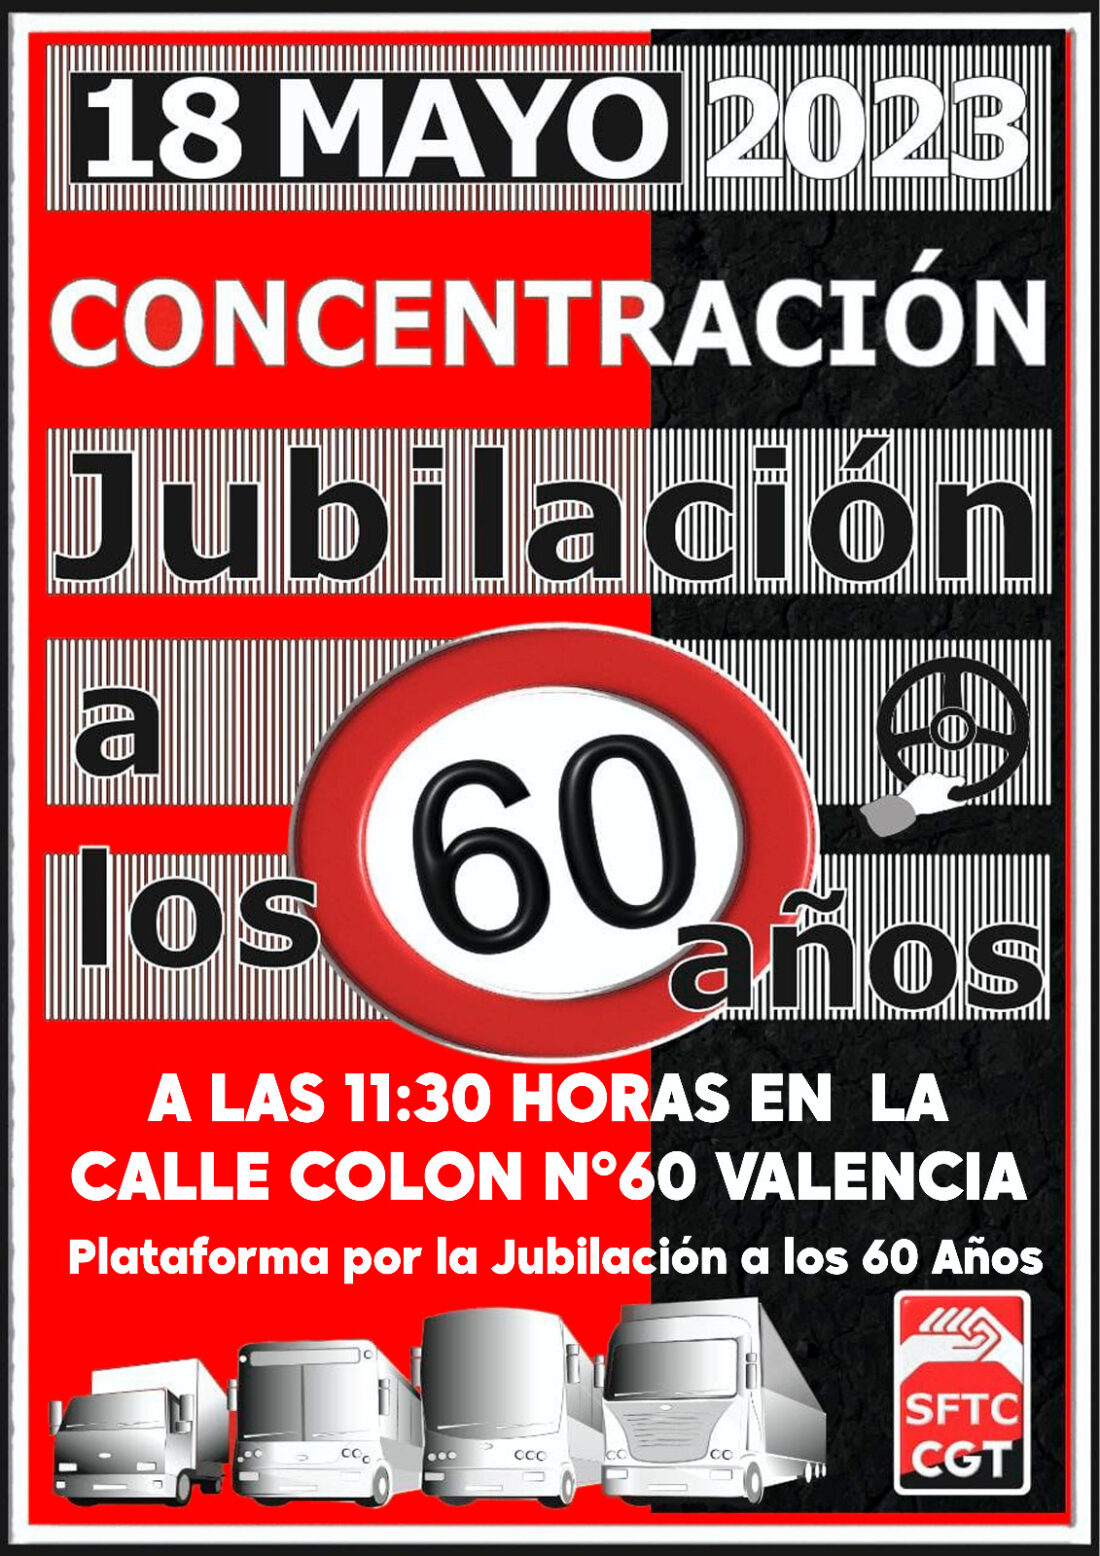 Los trabajadores de EMT València respaldan la huelga del 18 de mayo